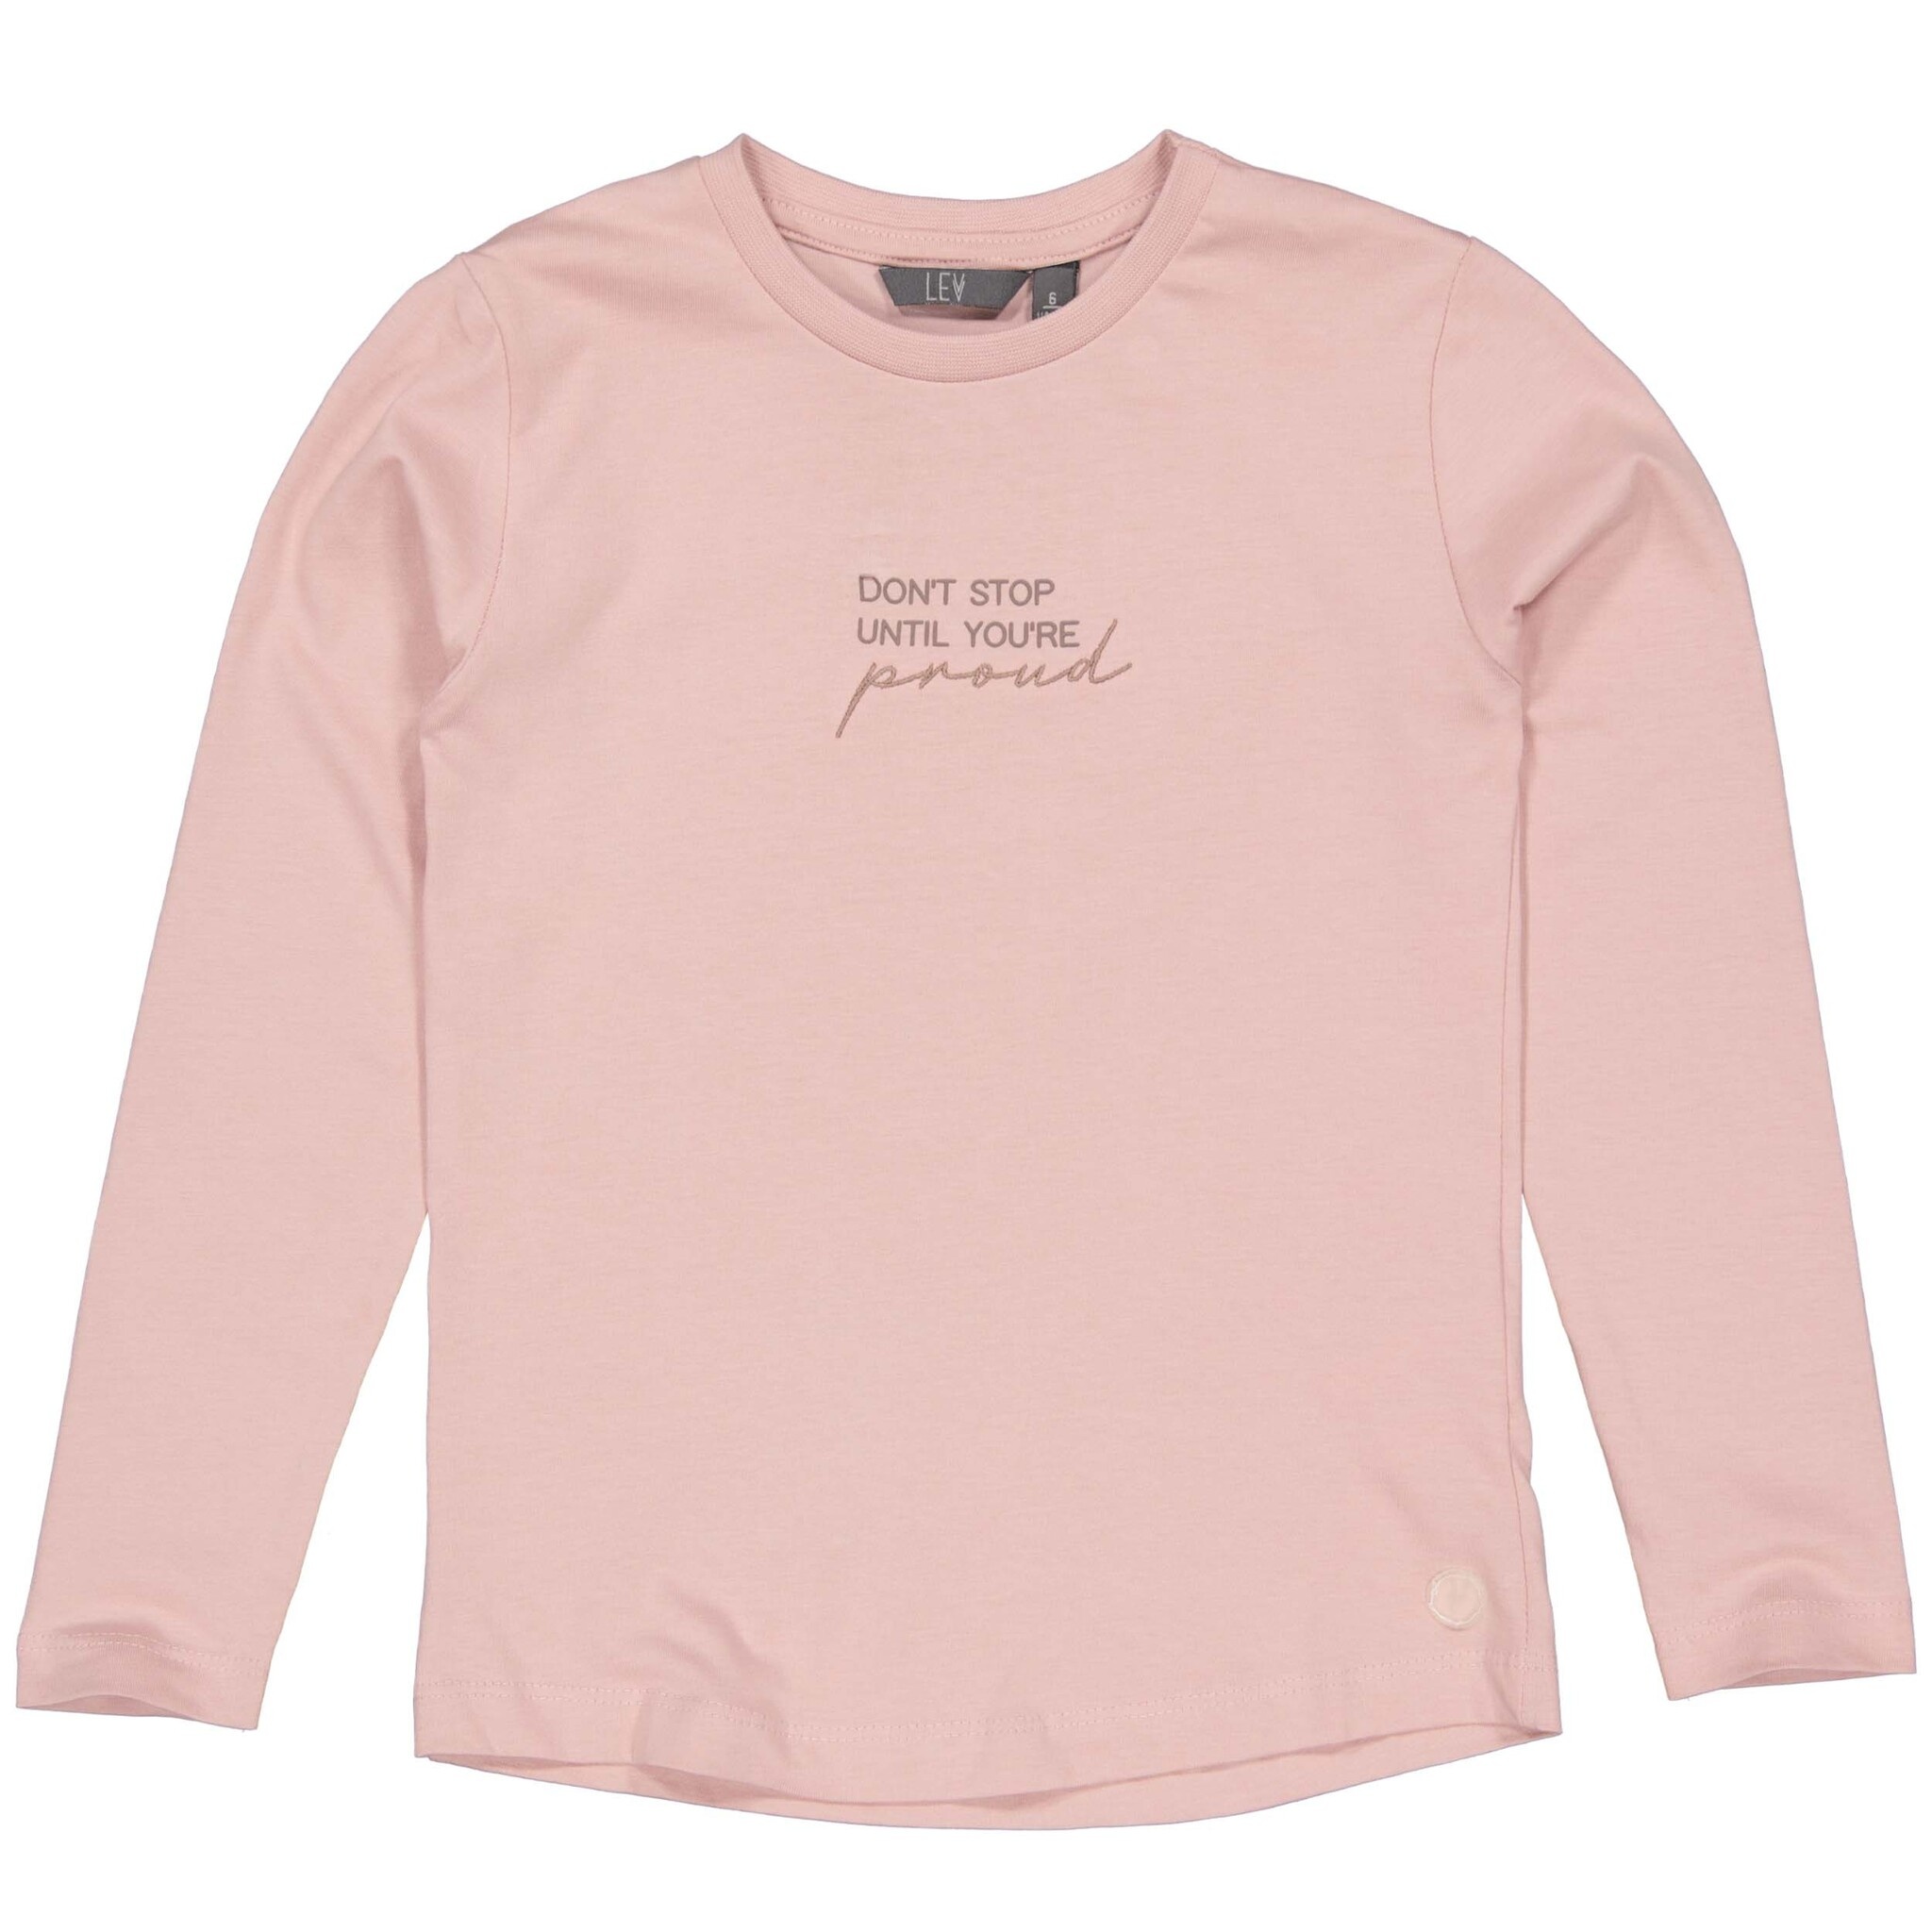 Meisjes shirt - Fanou - Pastel roze